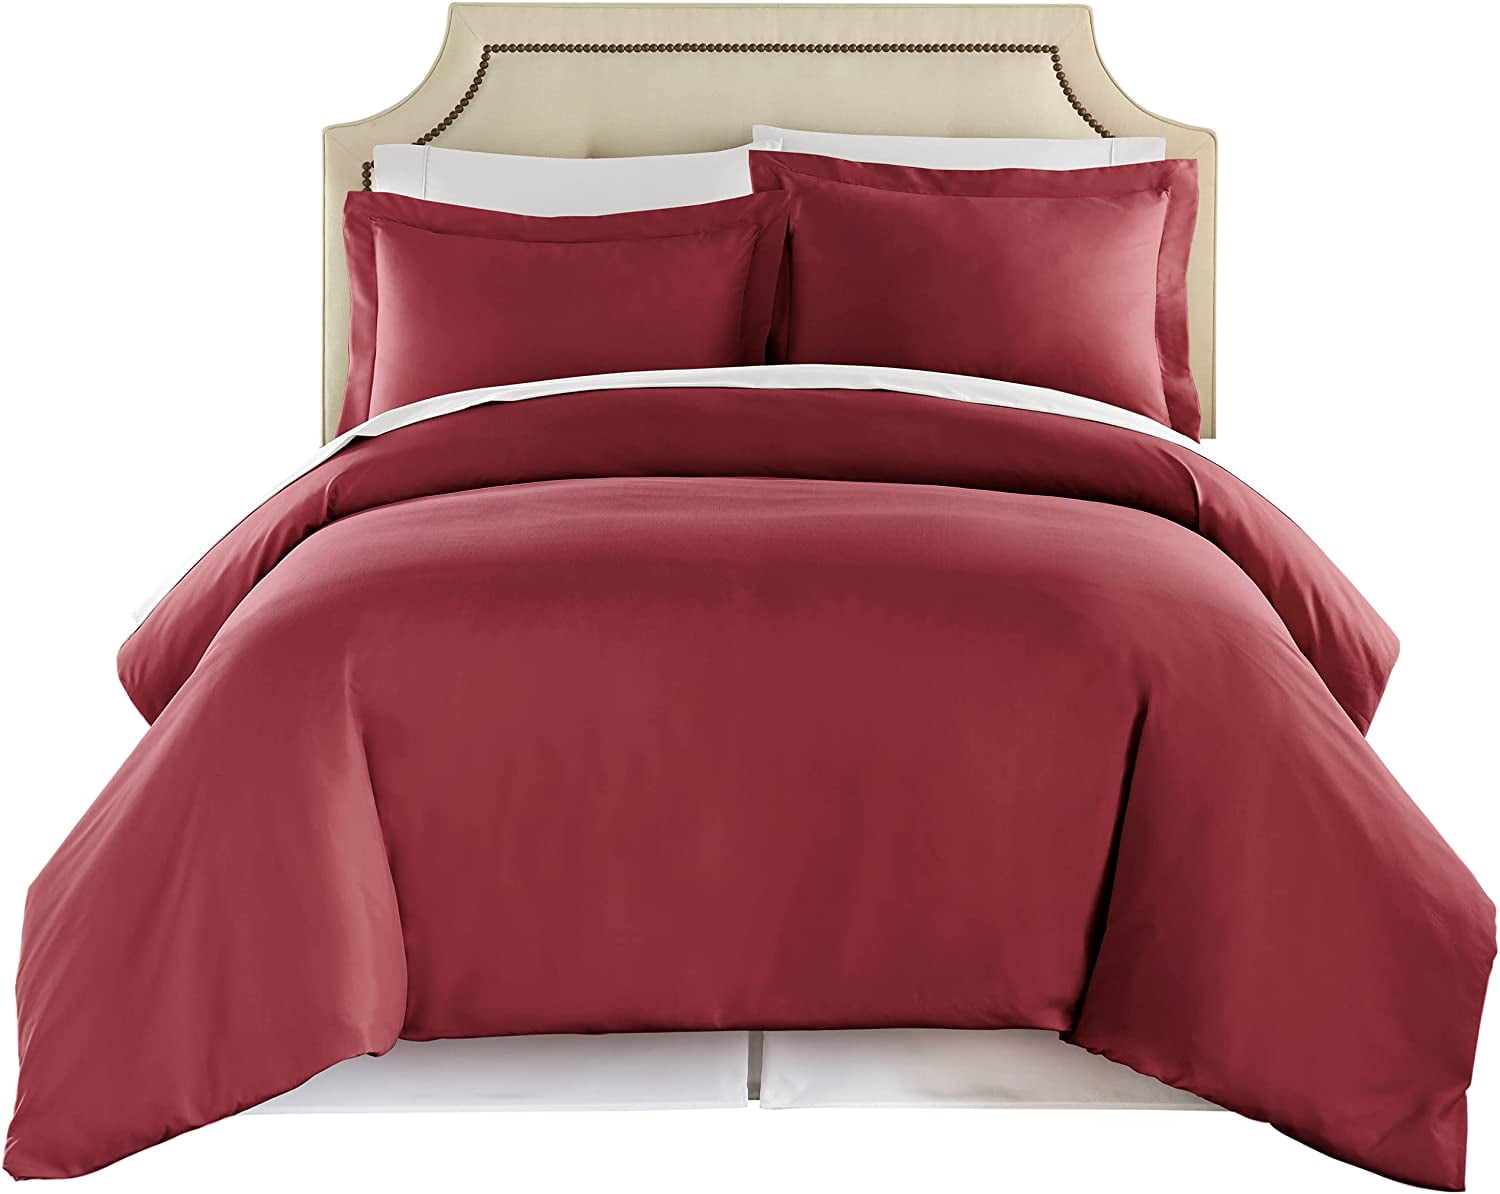 Burgundy Full Duvet Cover Set Soft Brushed Comforter Cover W/Pillow Sham 